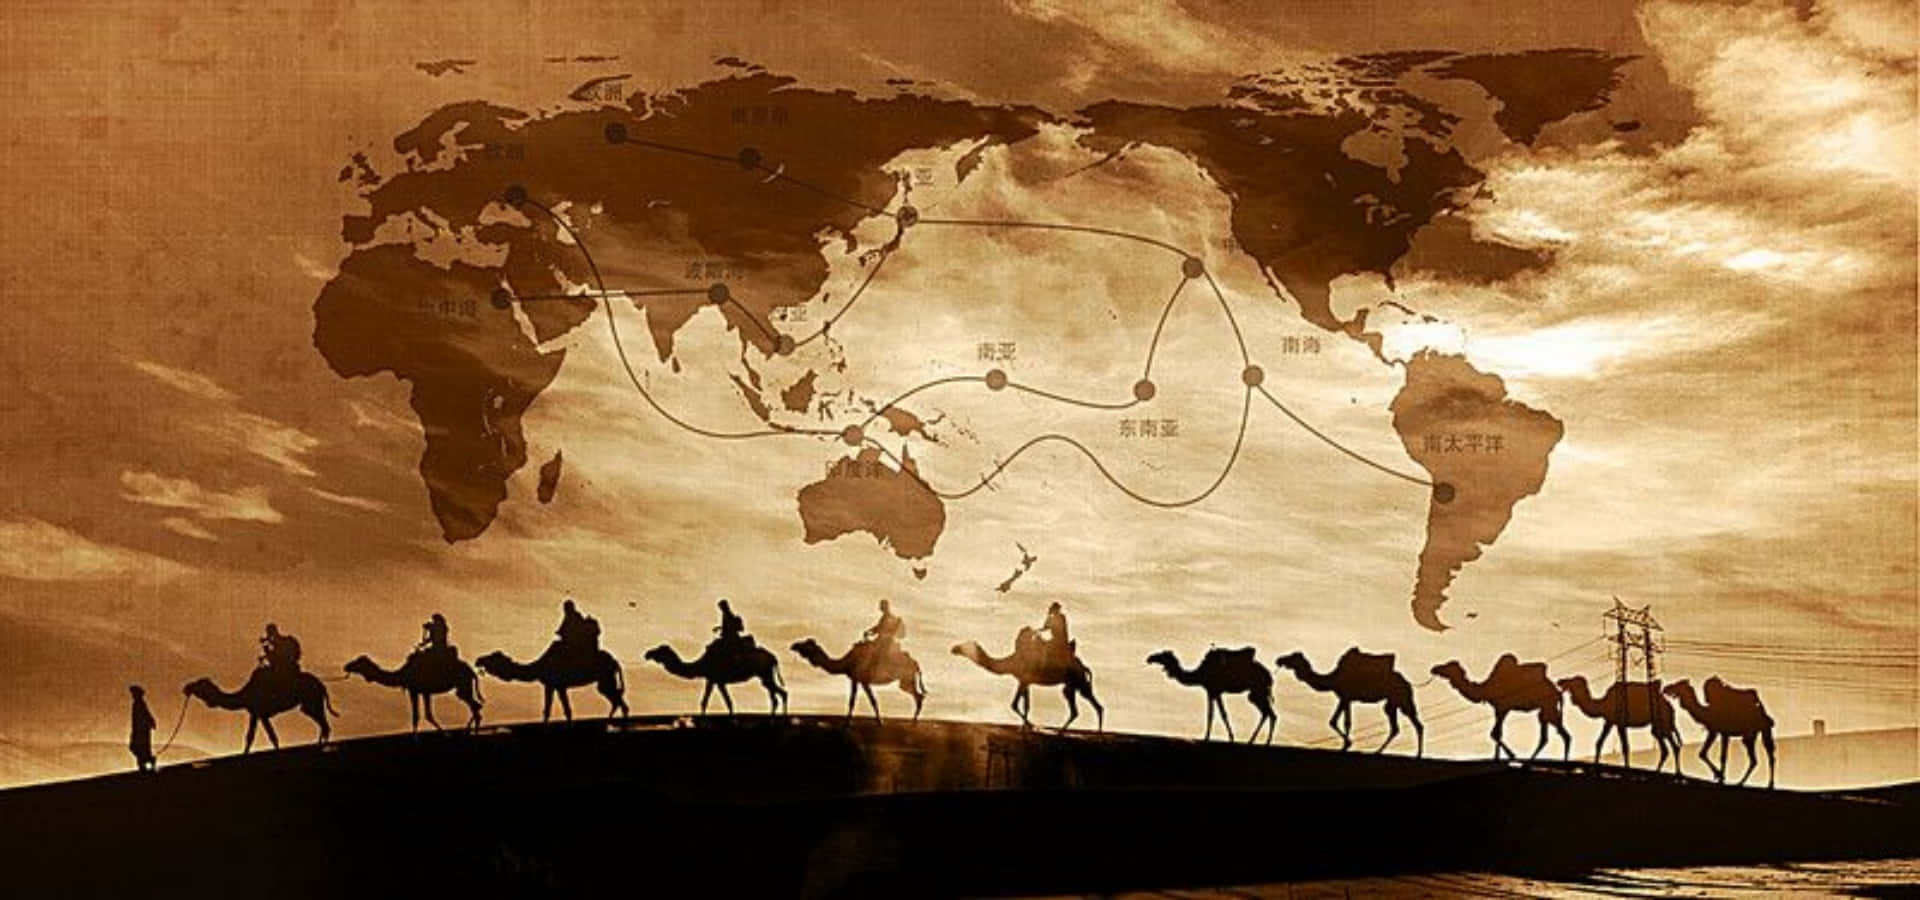 Ungrupo De Camellos Con Un Mapa Del Mundo